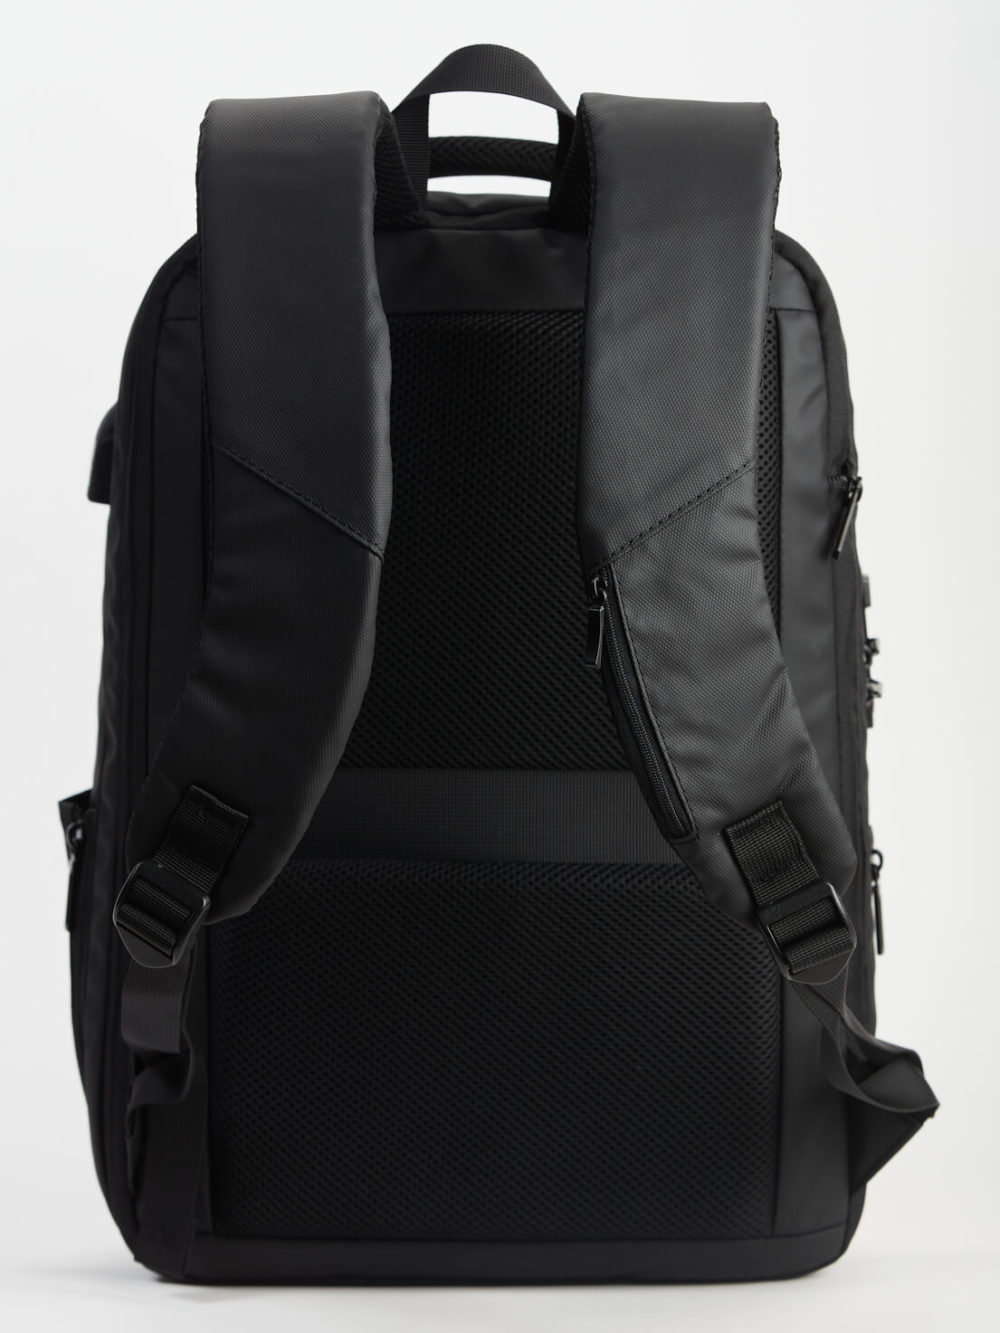 Un sac à dos noir avec diverses poches et bretelles réglables, représenté sur fond blanc.